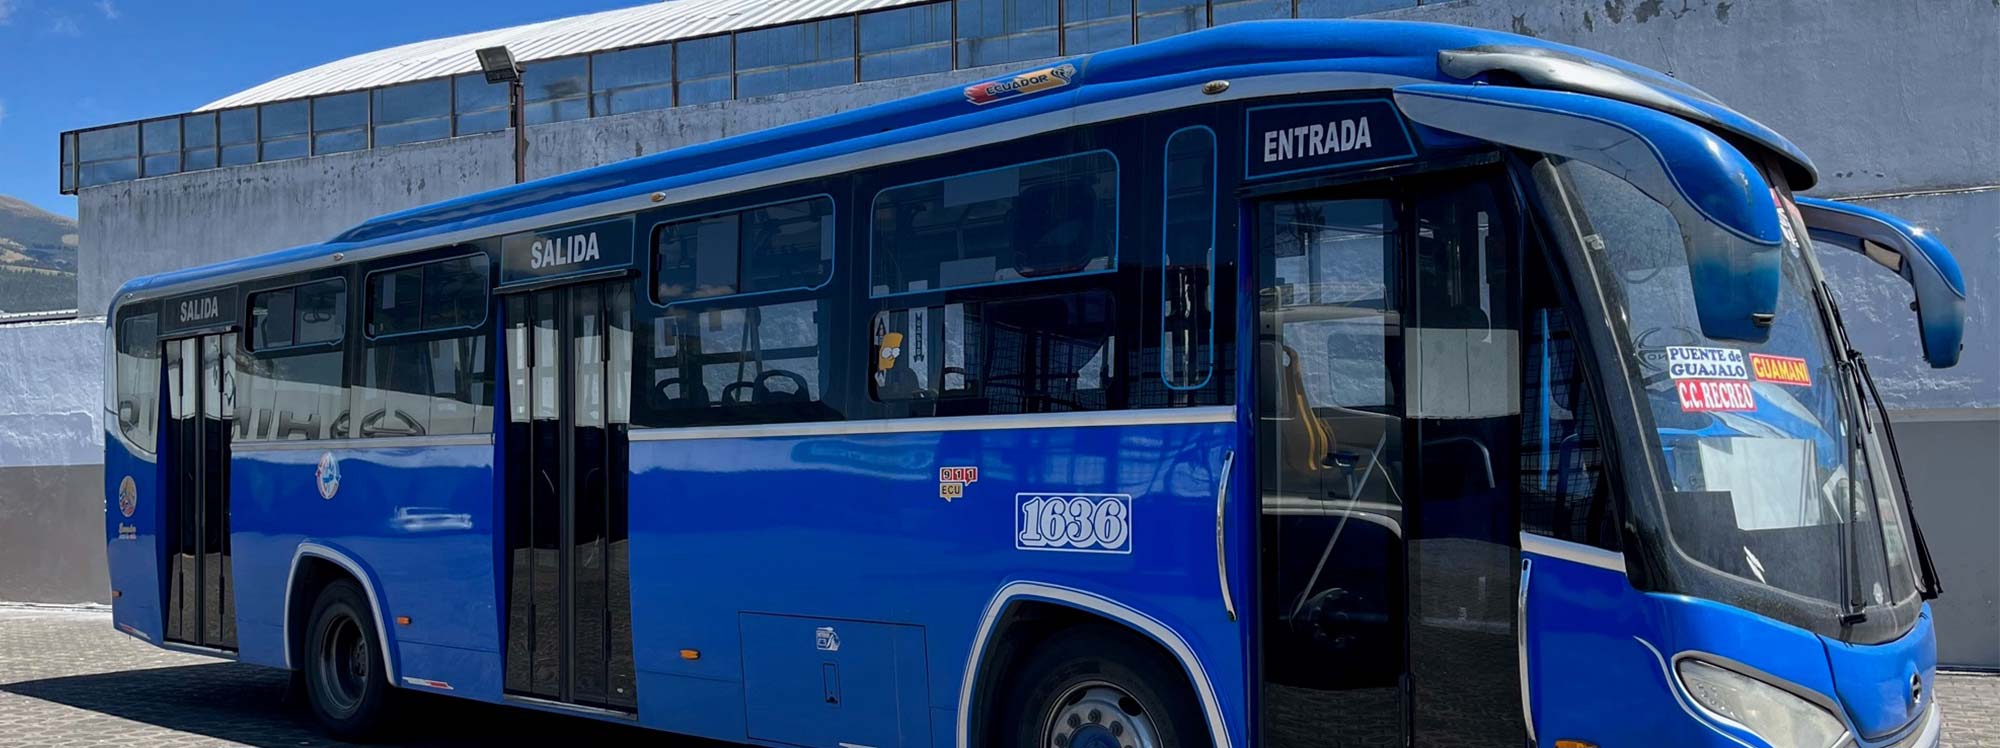 Buses urbanos e interprovinciales, diferencias a tomar en cuenta